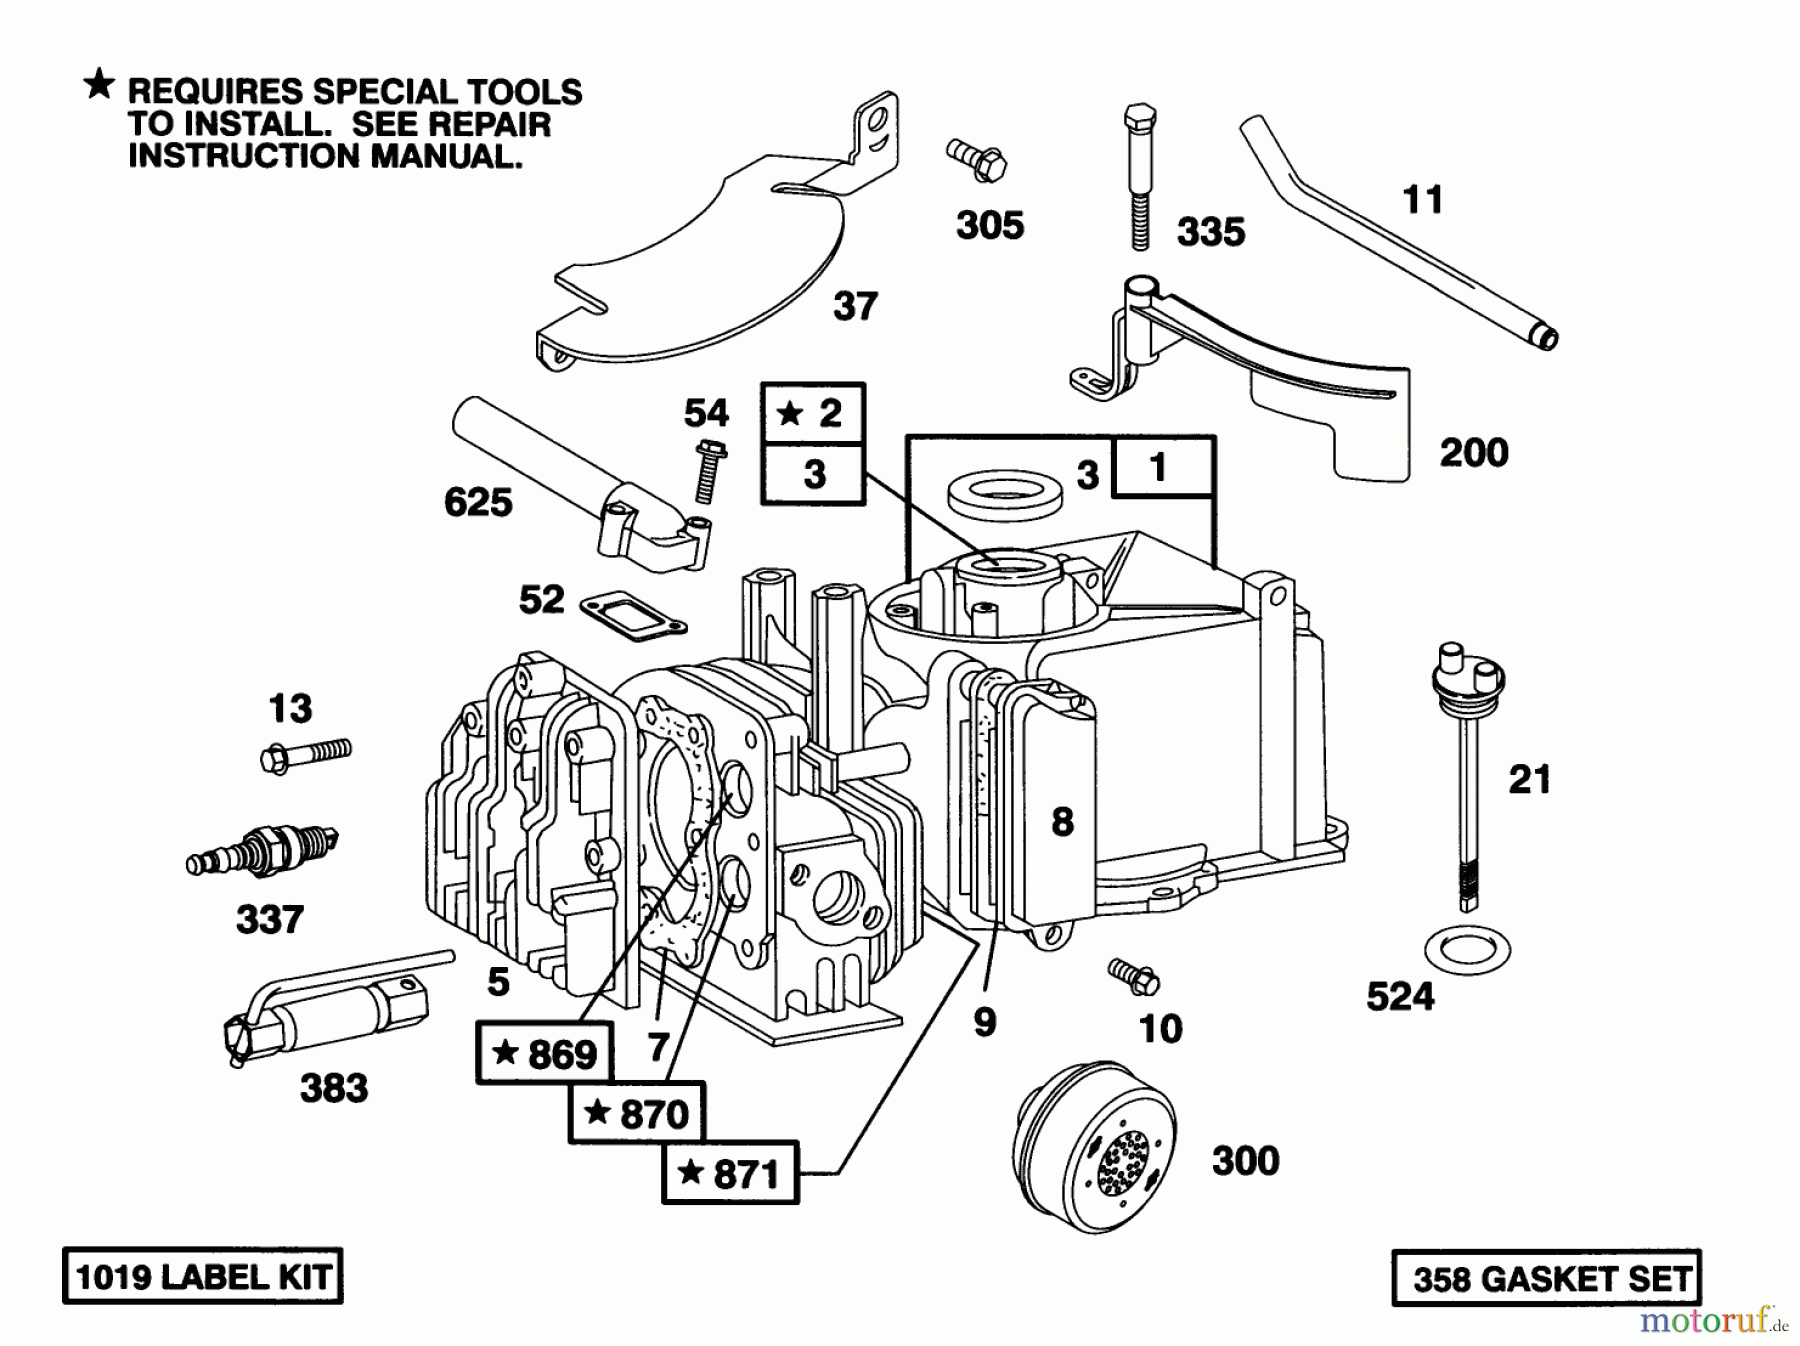  Toro Neu Mowers, Walk-Behind Seite 1 16411 - Toro Lawnmower, 1993 (3900001-3999999) ENGINE BRIGGS & STRATTON MODEL 95902-3153-01 #1